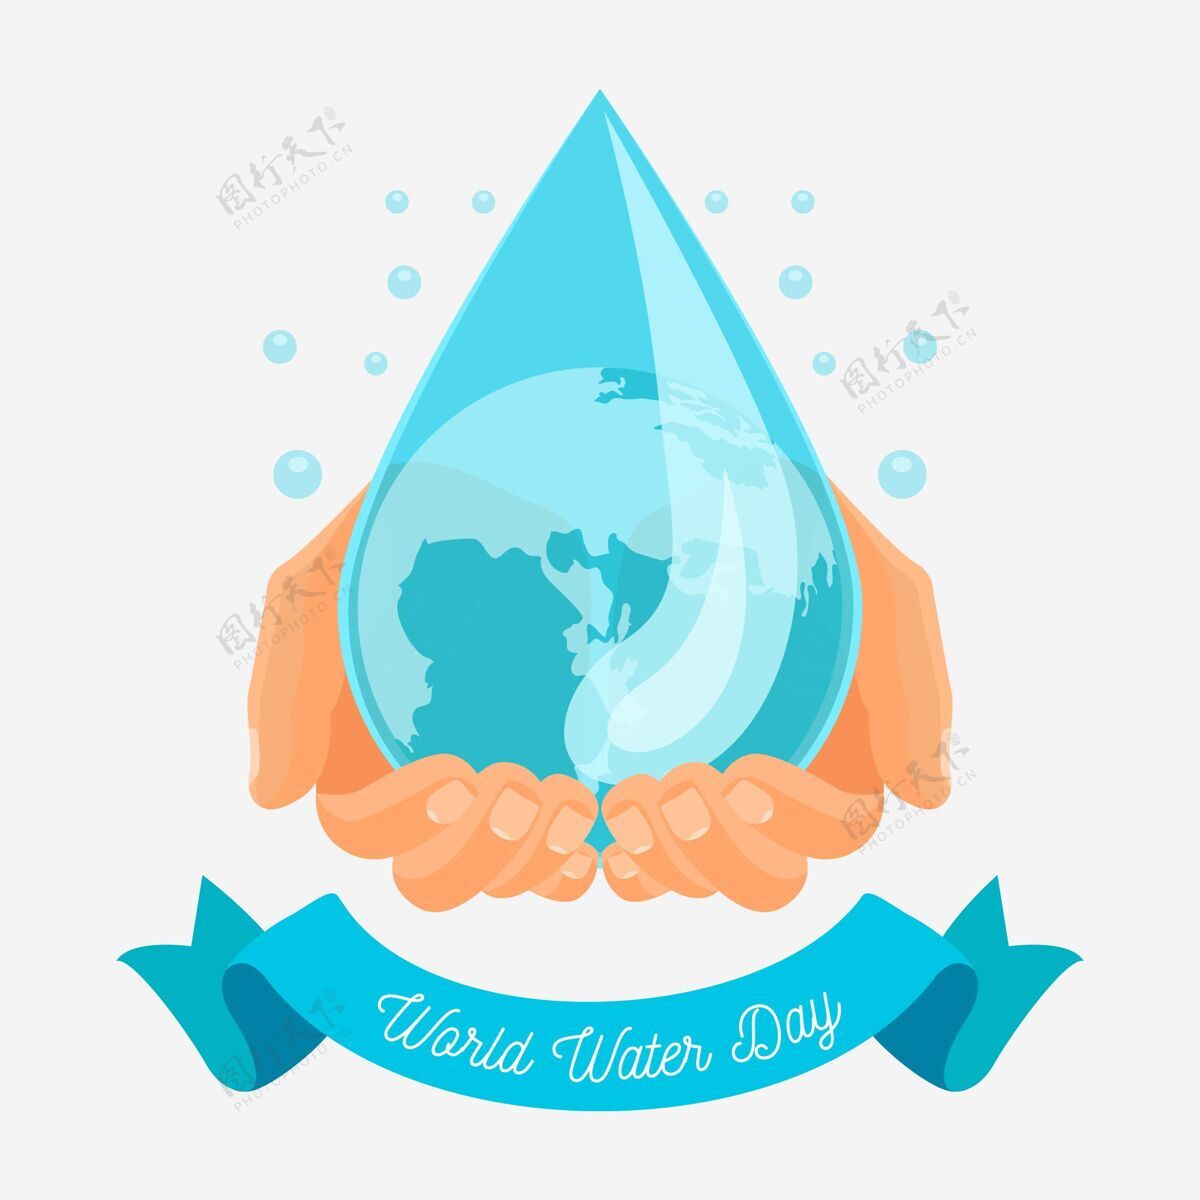 主题世界水日庆典设计庆典活动